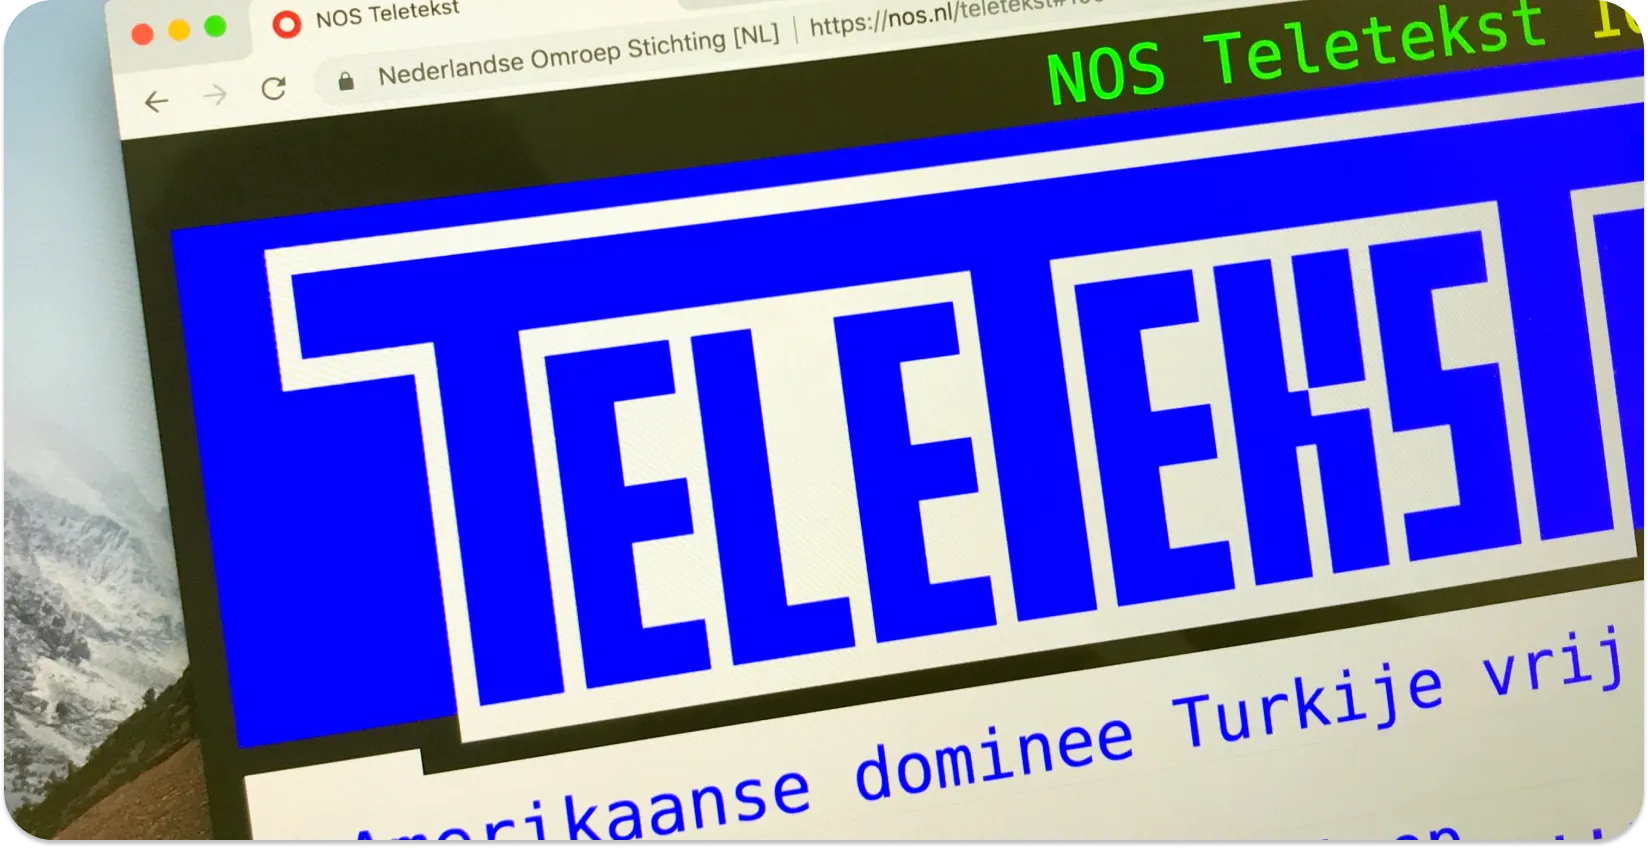 Una pantalla de computadora que muestra subtítulos de teletexto con titulares de noticias, ejemplificando el formato de subtítulos de teletexto.